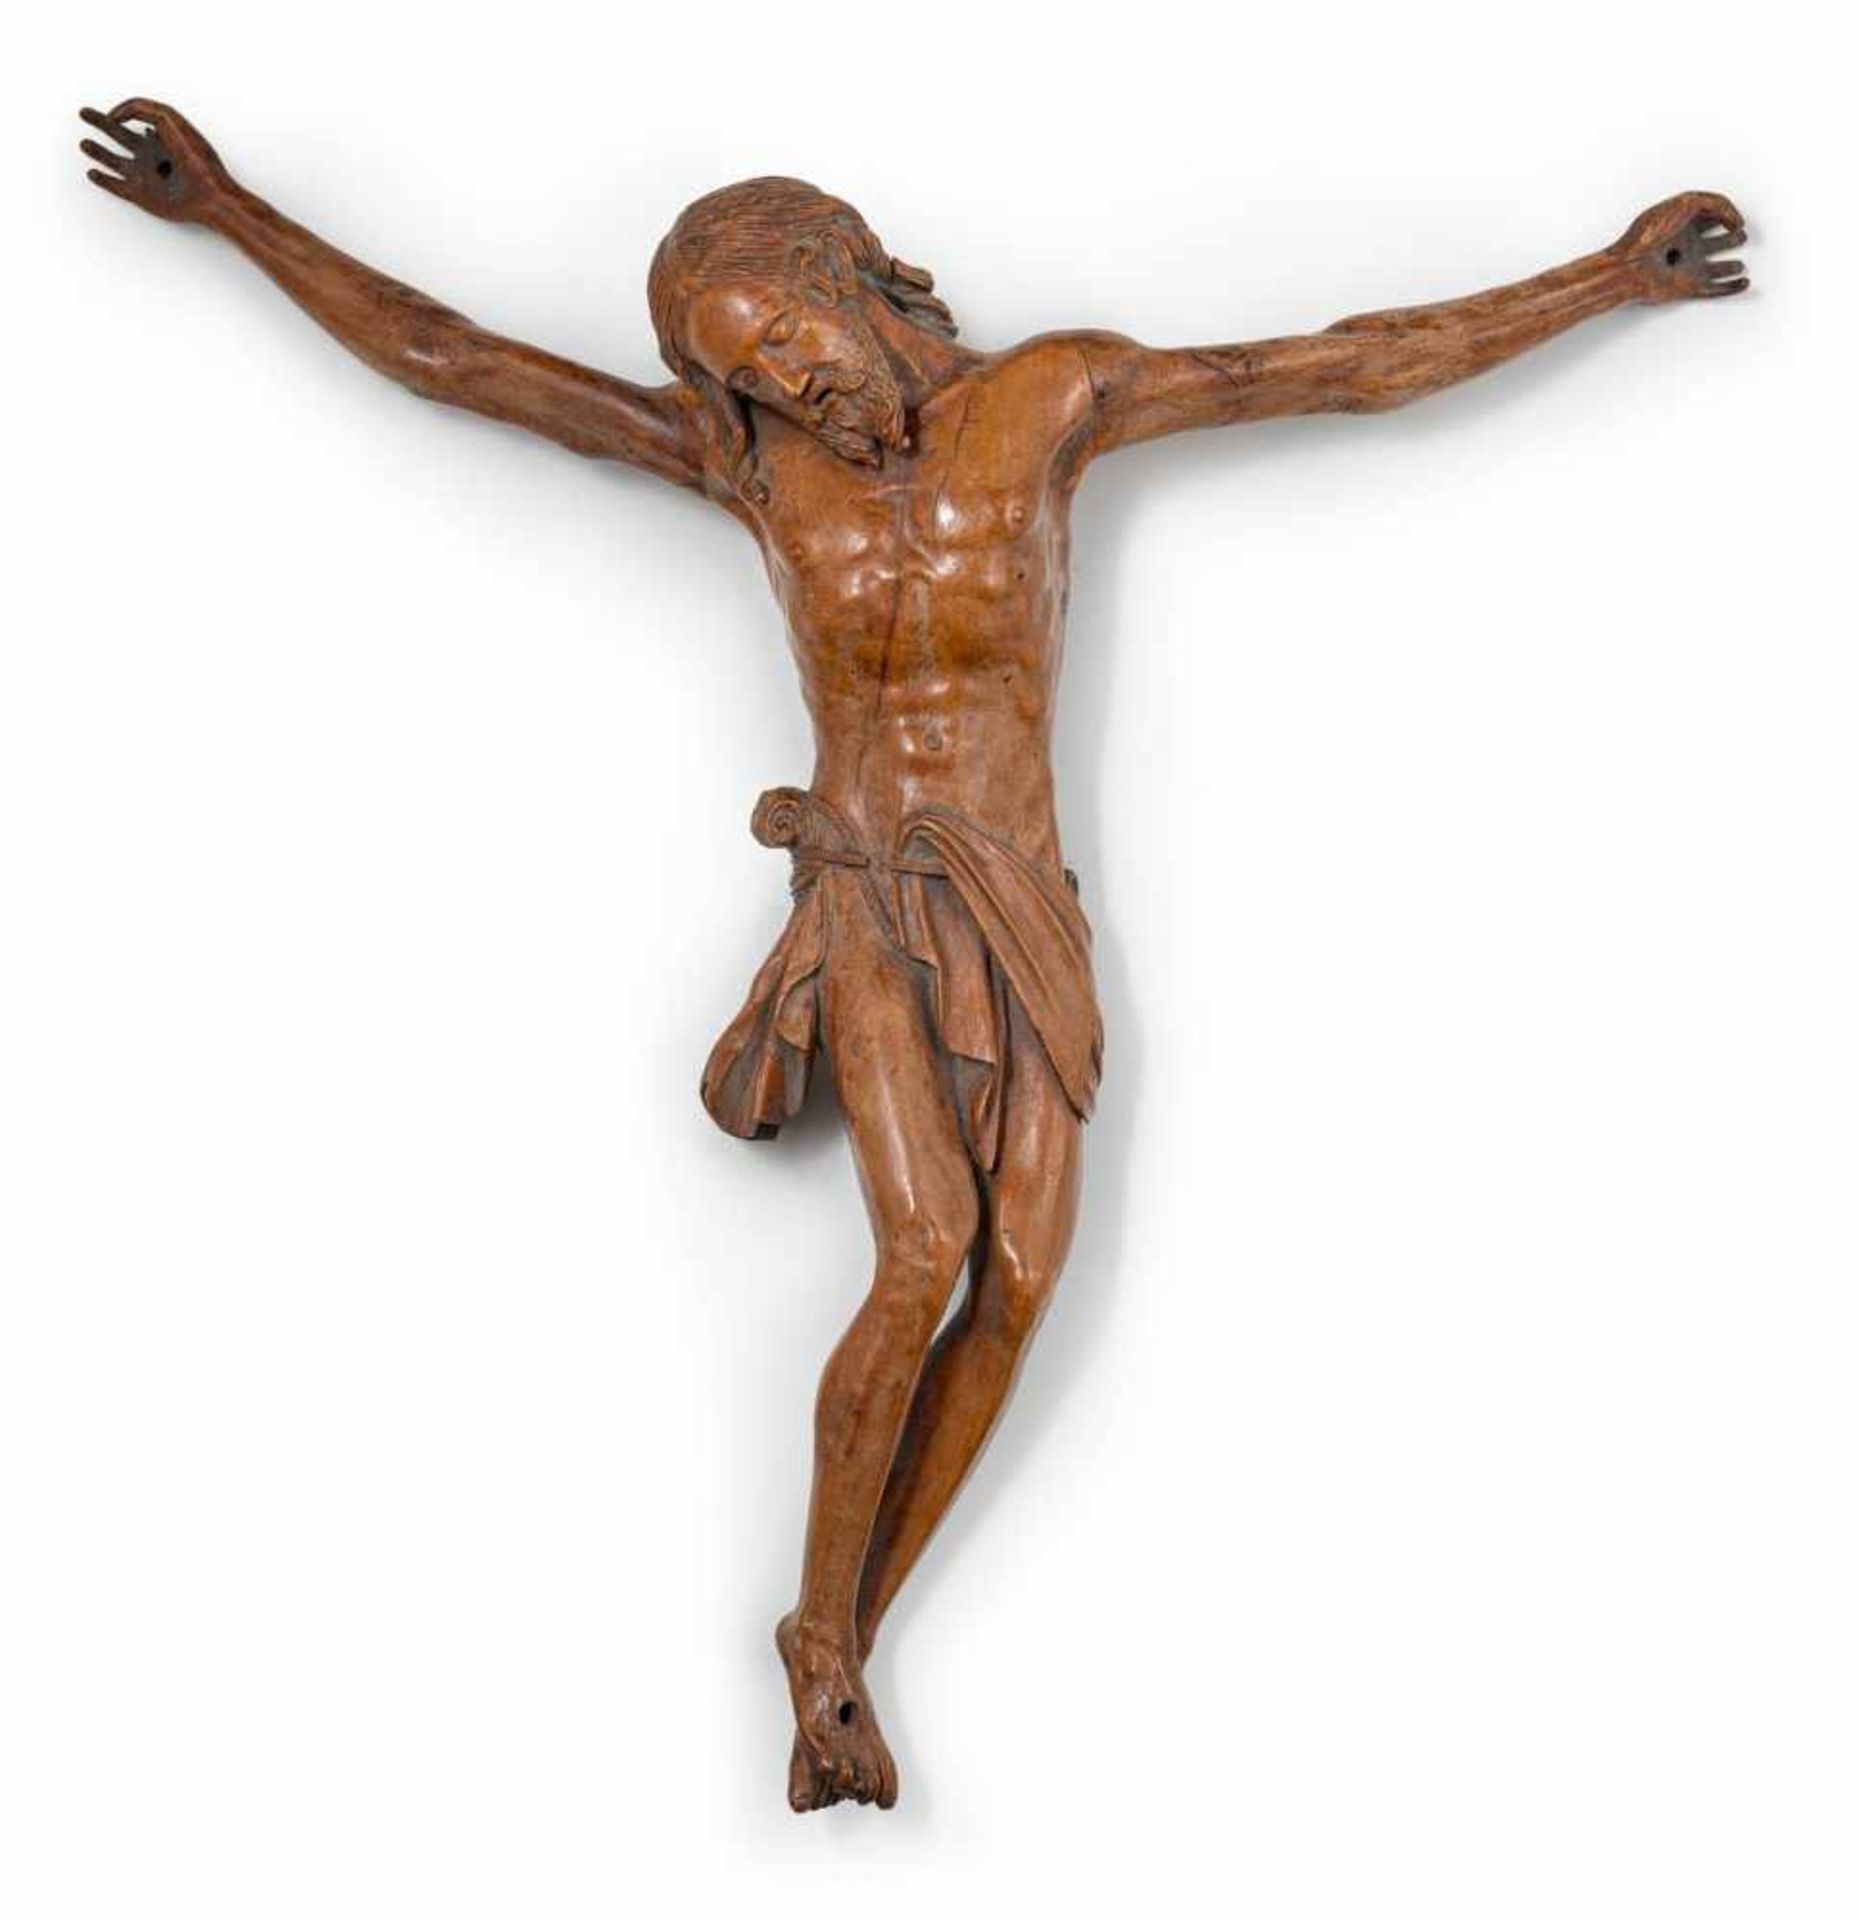 Korpus eines Kruzifixes17. Jh.Dreinageltypus, wohl süddeutsch oder alpenländisch. Obstholz,